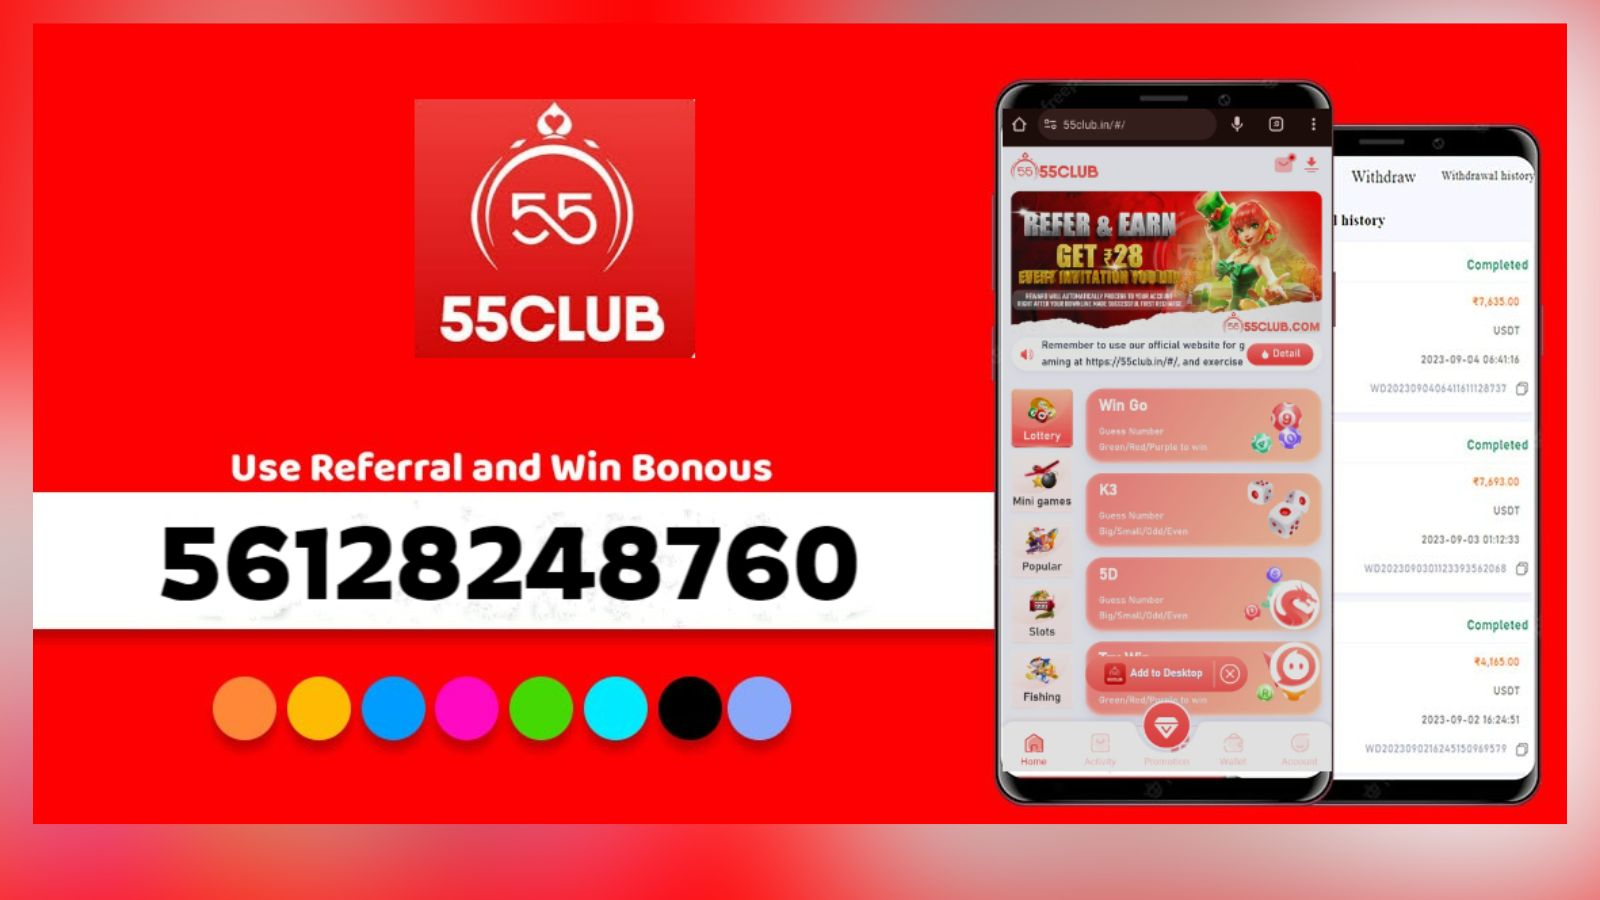 55 Club Invite Code is 2713859196 | Get Rs.500 Bonus - News Nation English